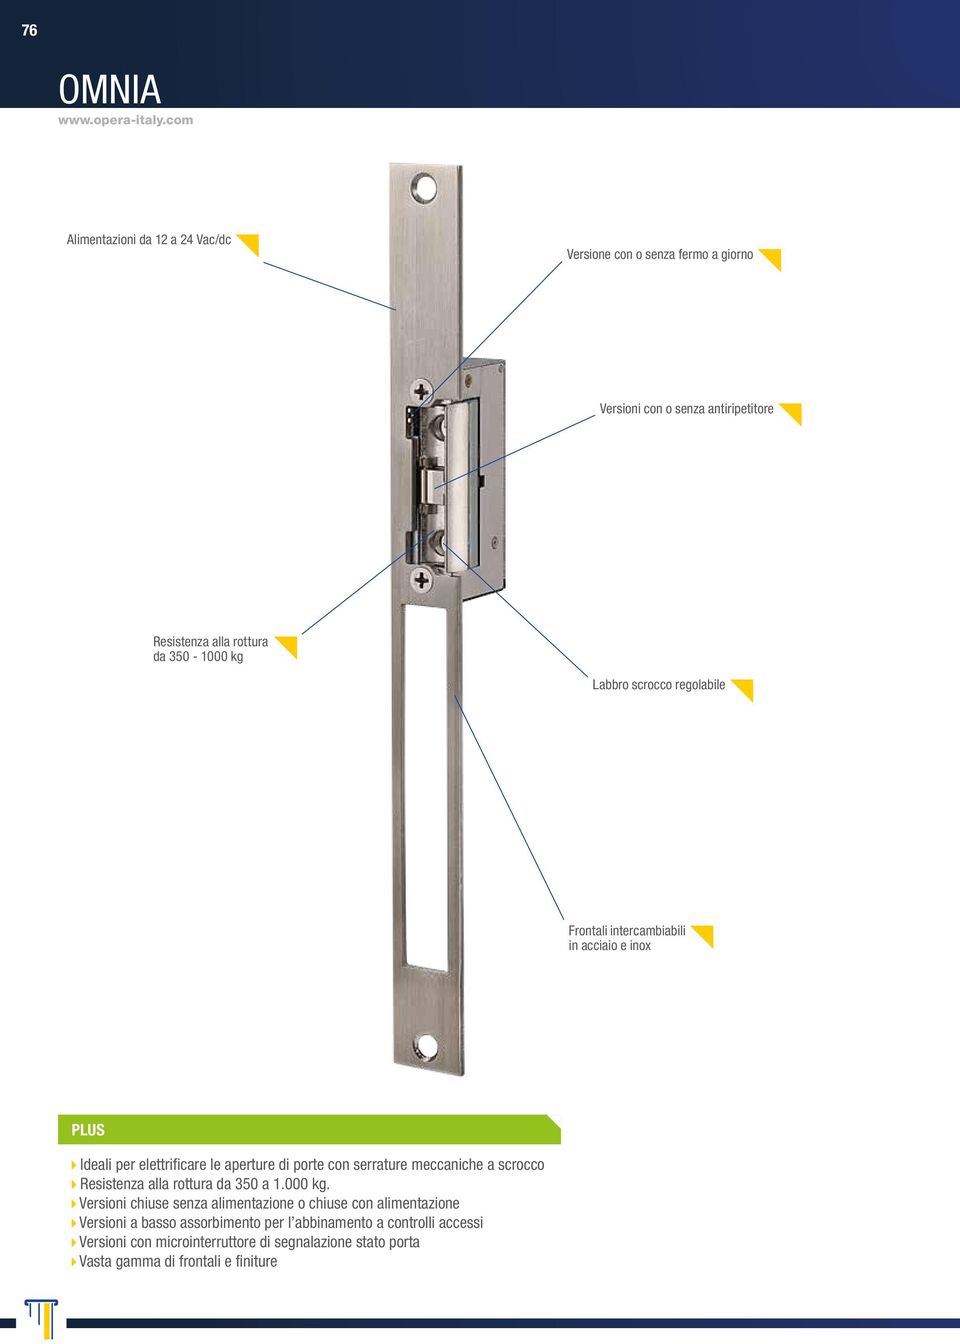 Labbro scrocco regolabile Frontali intercambiabili in acciaio e inox PLUS Ideali per elettrificare le aperture di porte con serrature meccaniche a